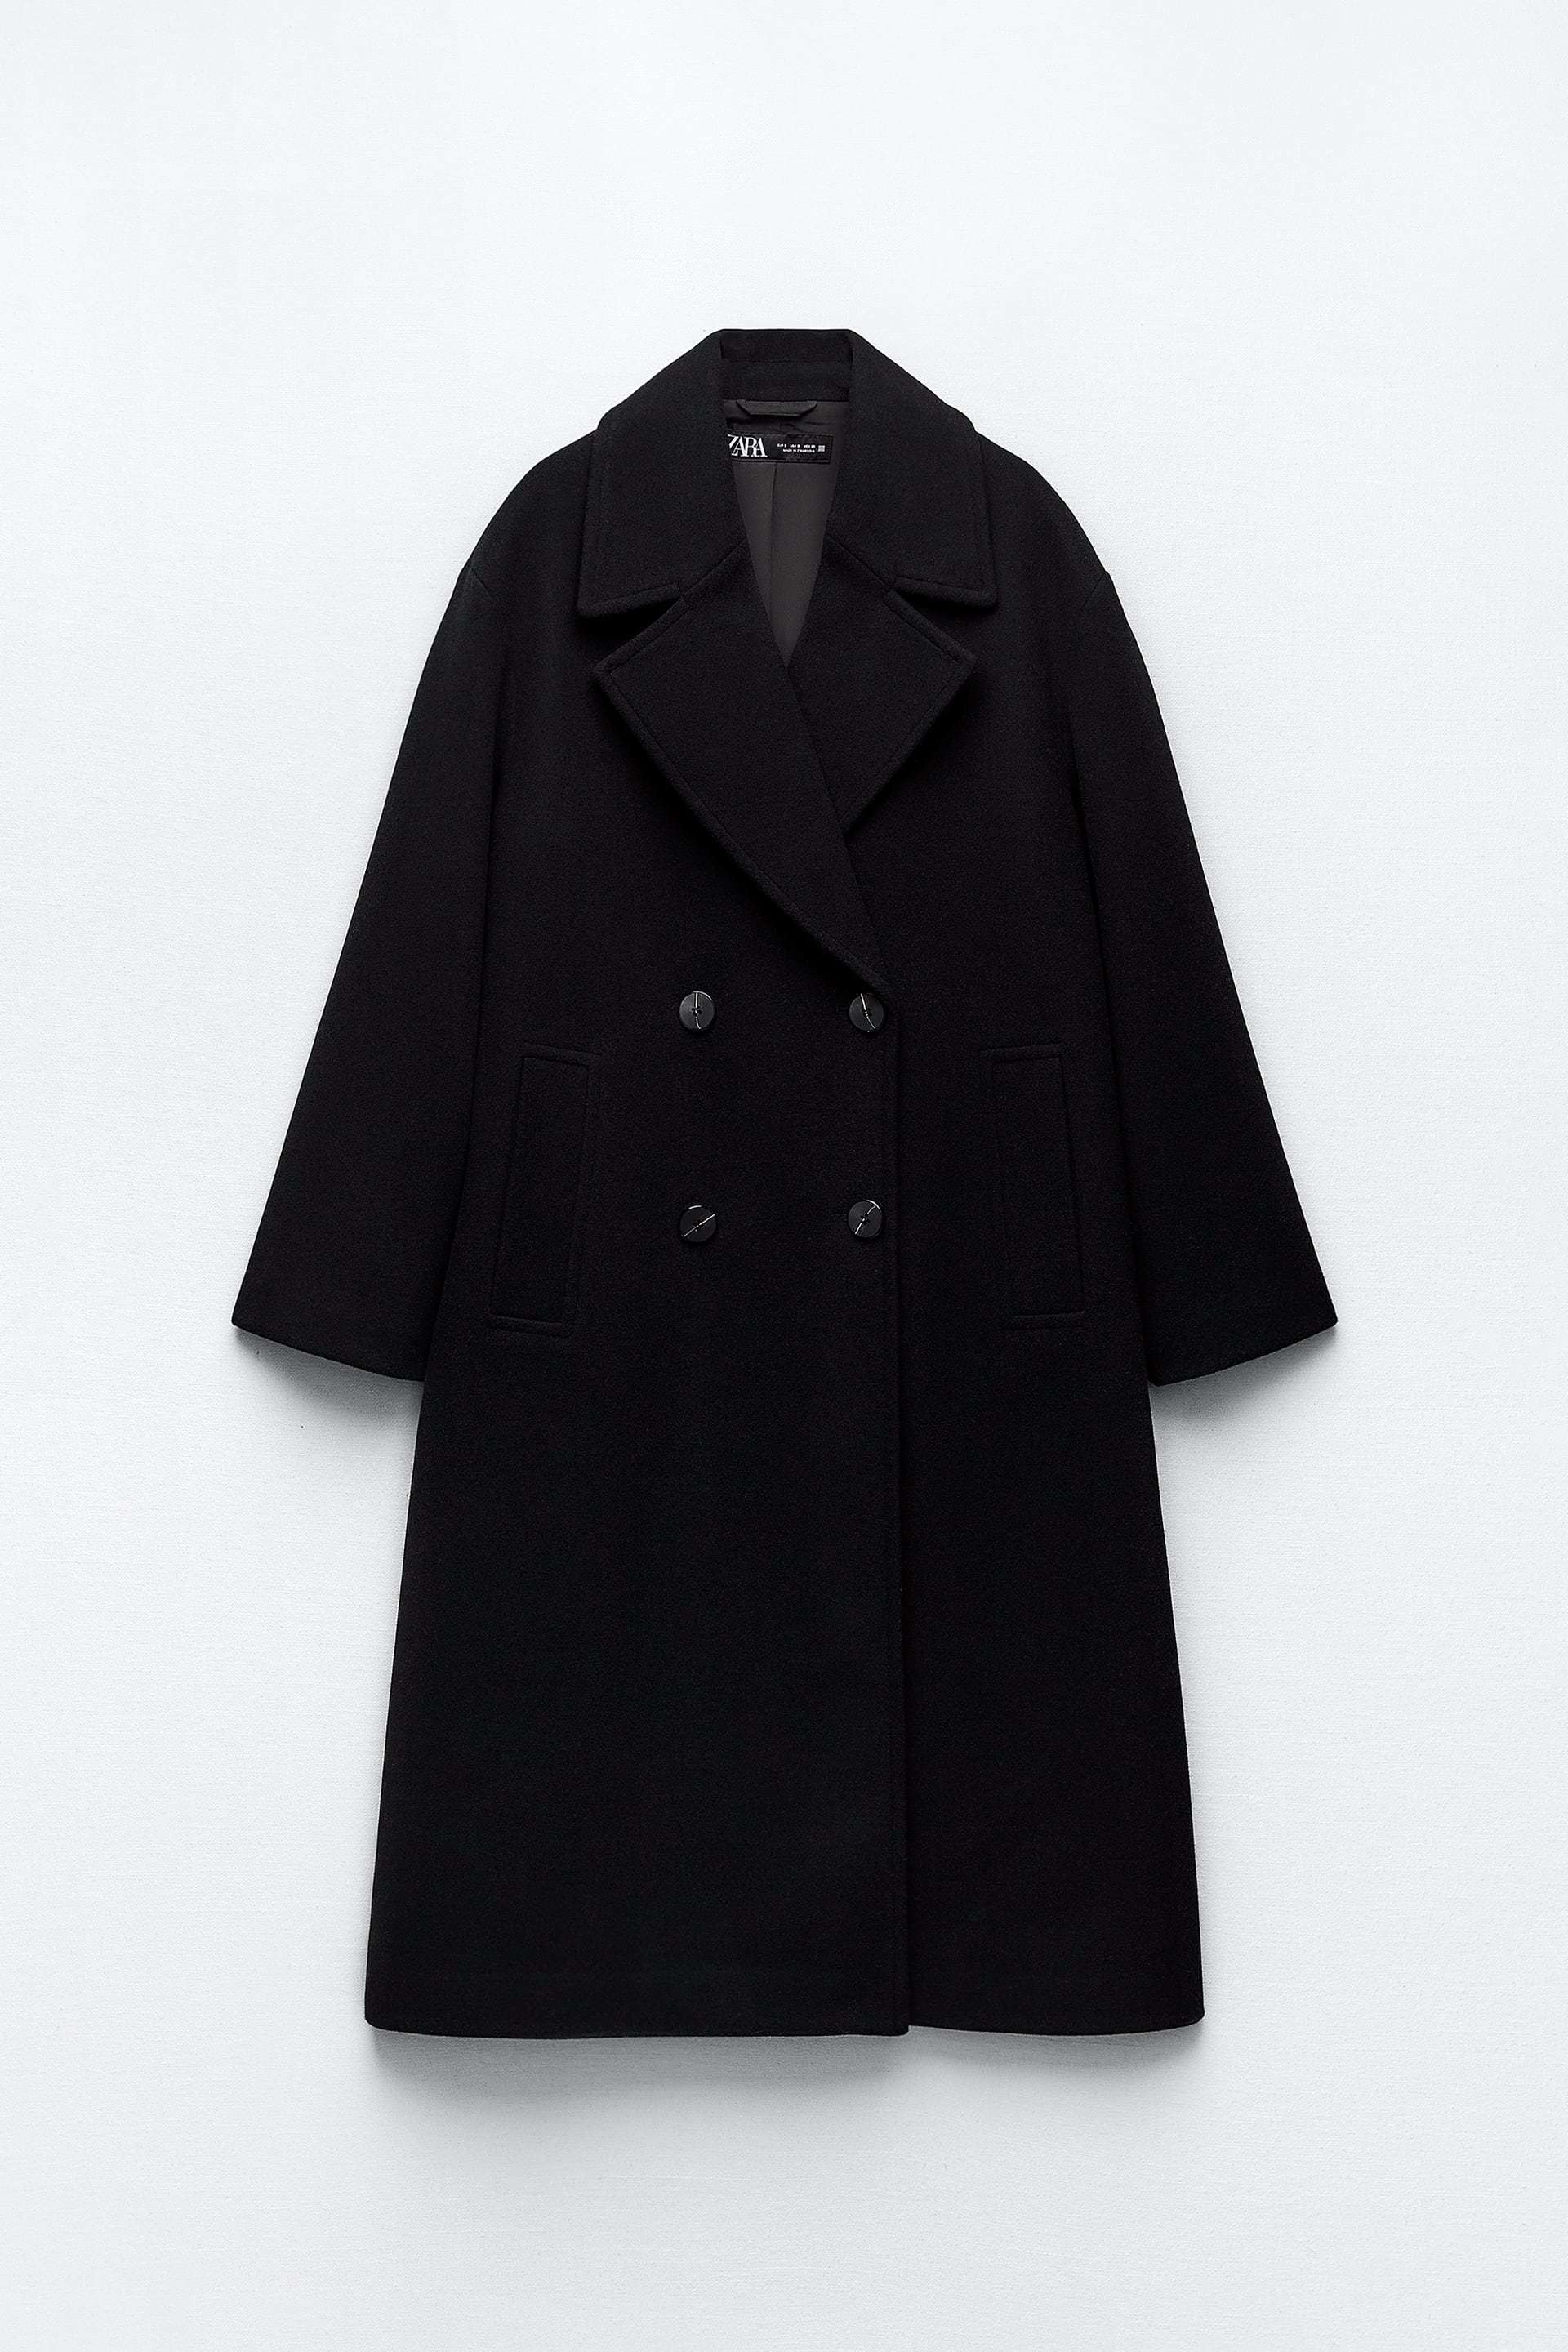 Abrigo cruzado negro de Zara (59,95 euros).